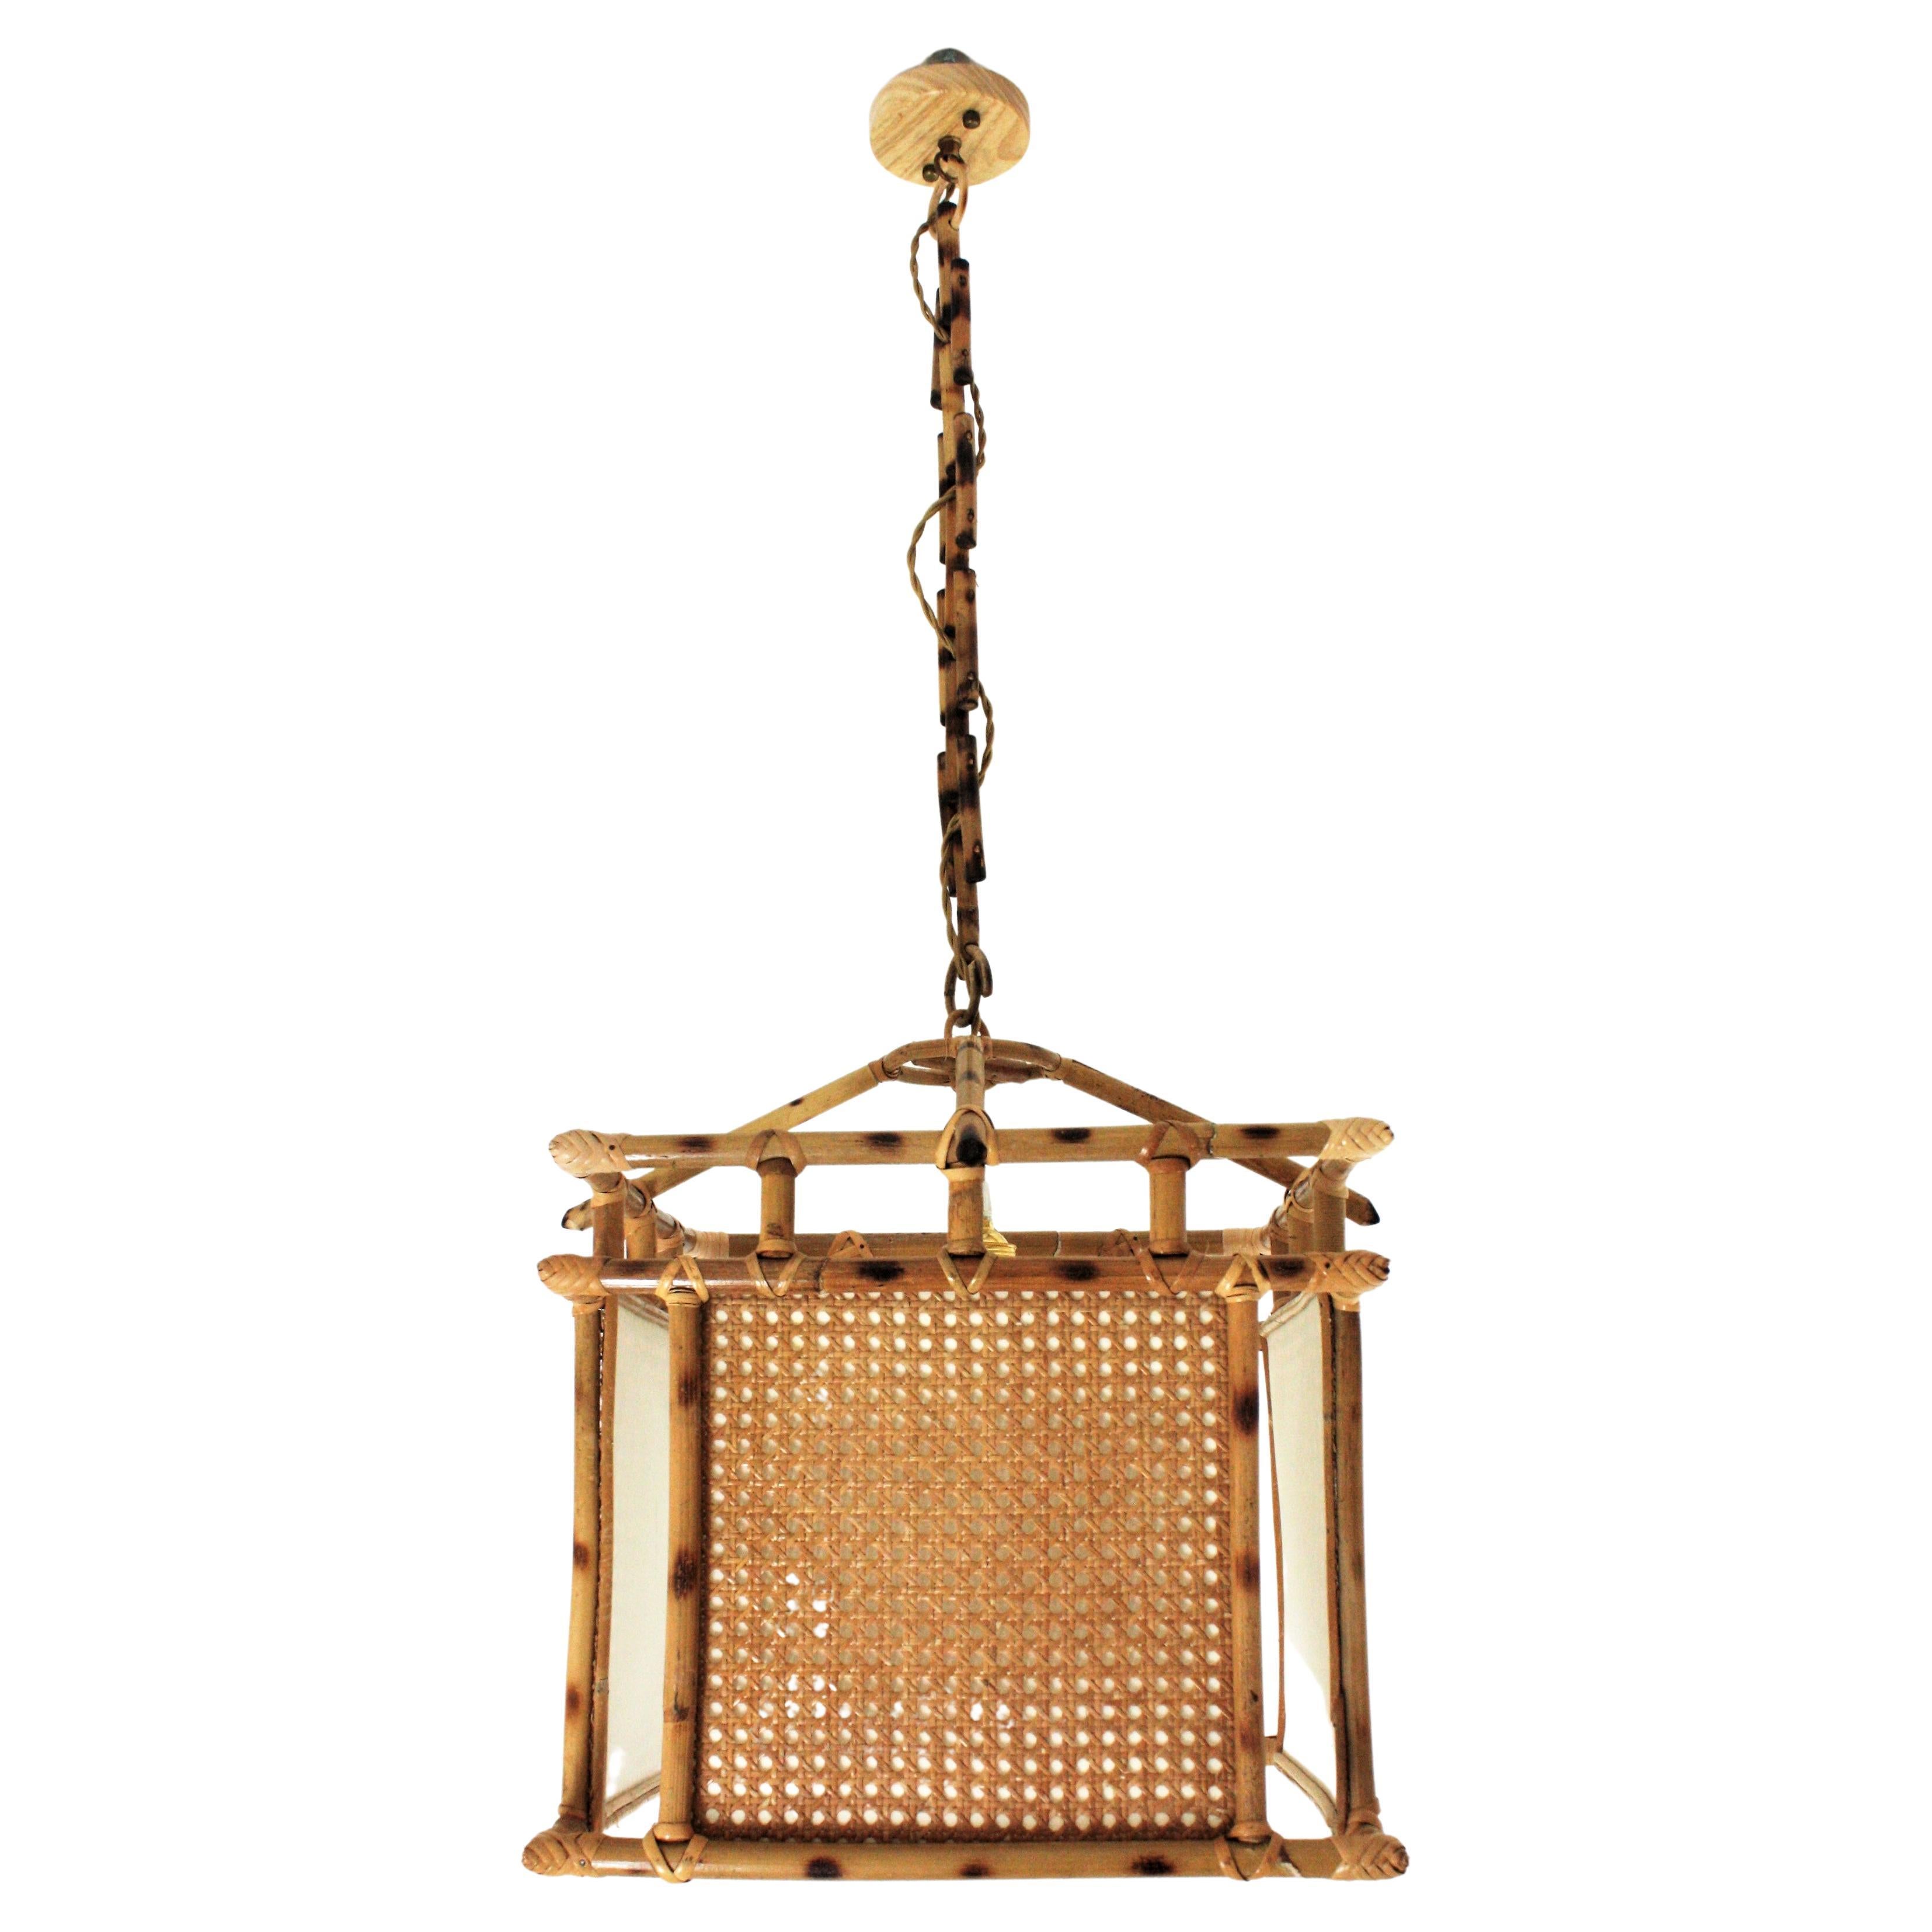 Lanterne carrée en rotin d'inspiration orientale avec panneaux en cannage d'osier. Espagne, années 1950-1960.
Ce plafonnier artisanal se compose d'une lanterne carrée en cannes de rotin avec des panneaux en cannage et un abat-jour intérieur en